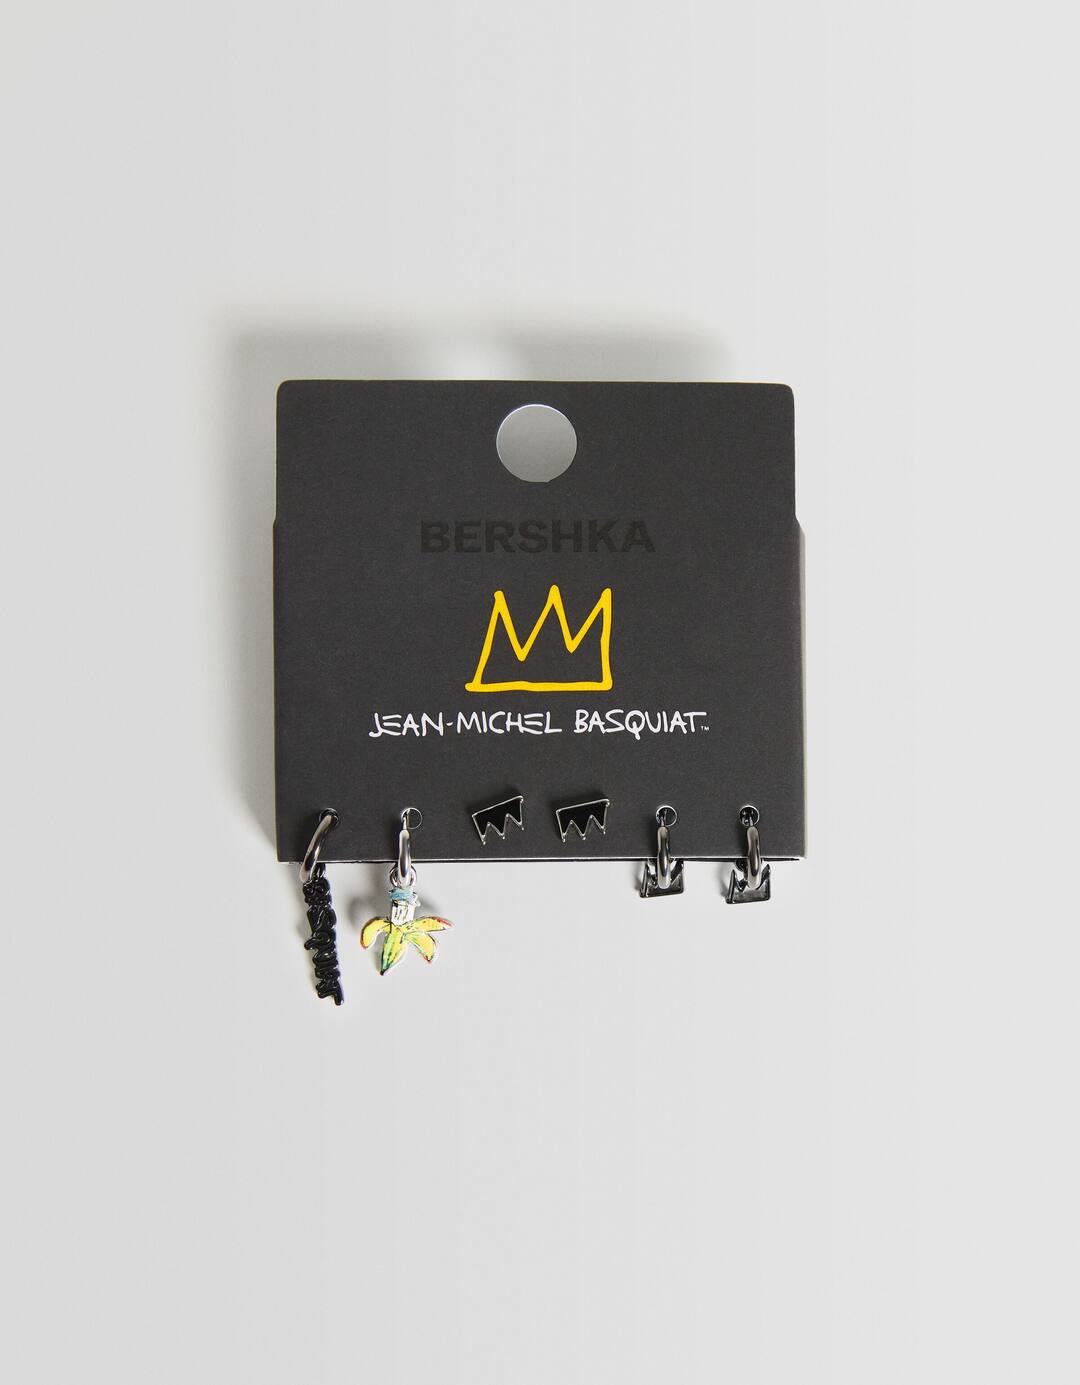 Set of 3 pairs of Jean-Michel Basquiat earrings